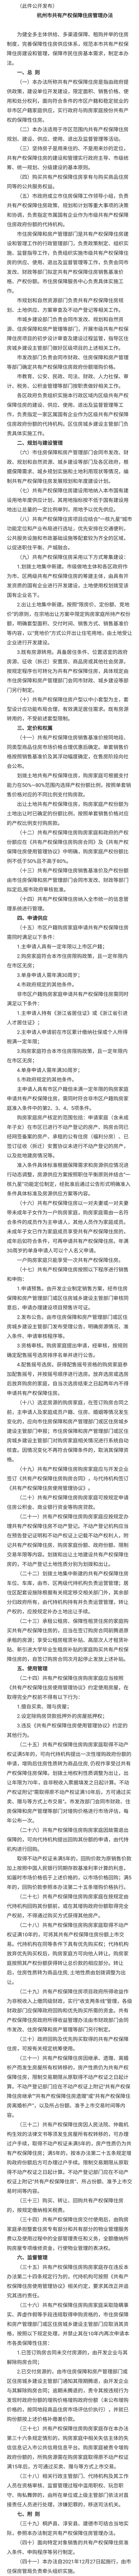 杭州发布共有产权保障房管理办法 非杭州户籍也可购买